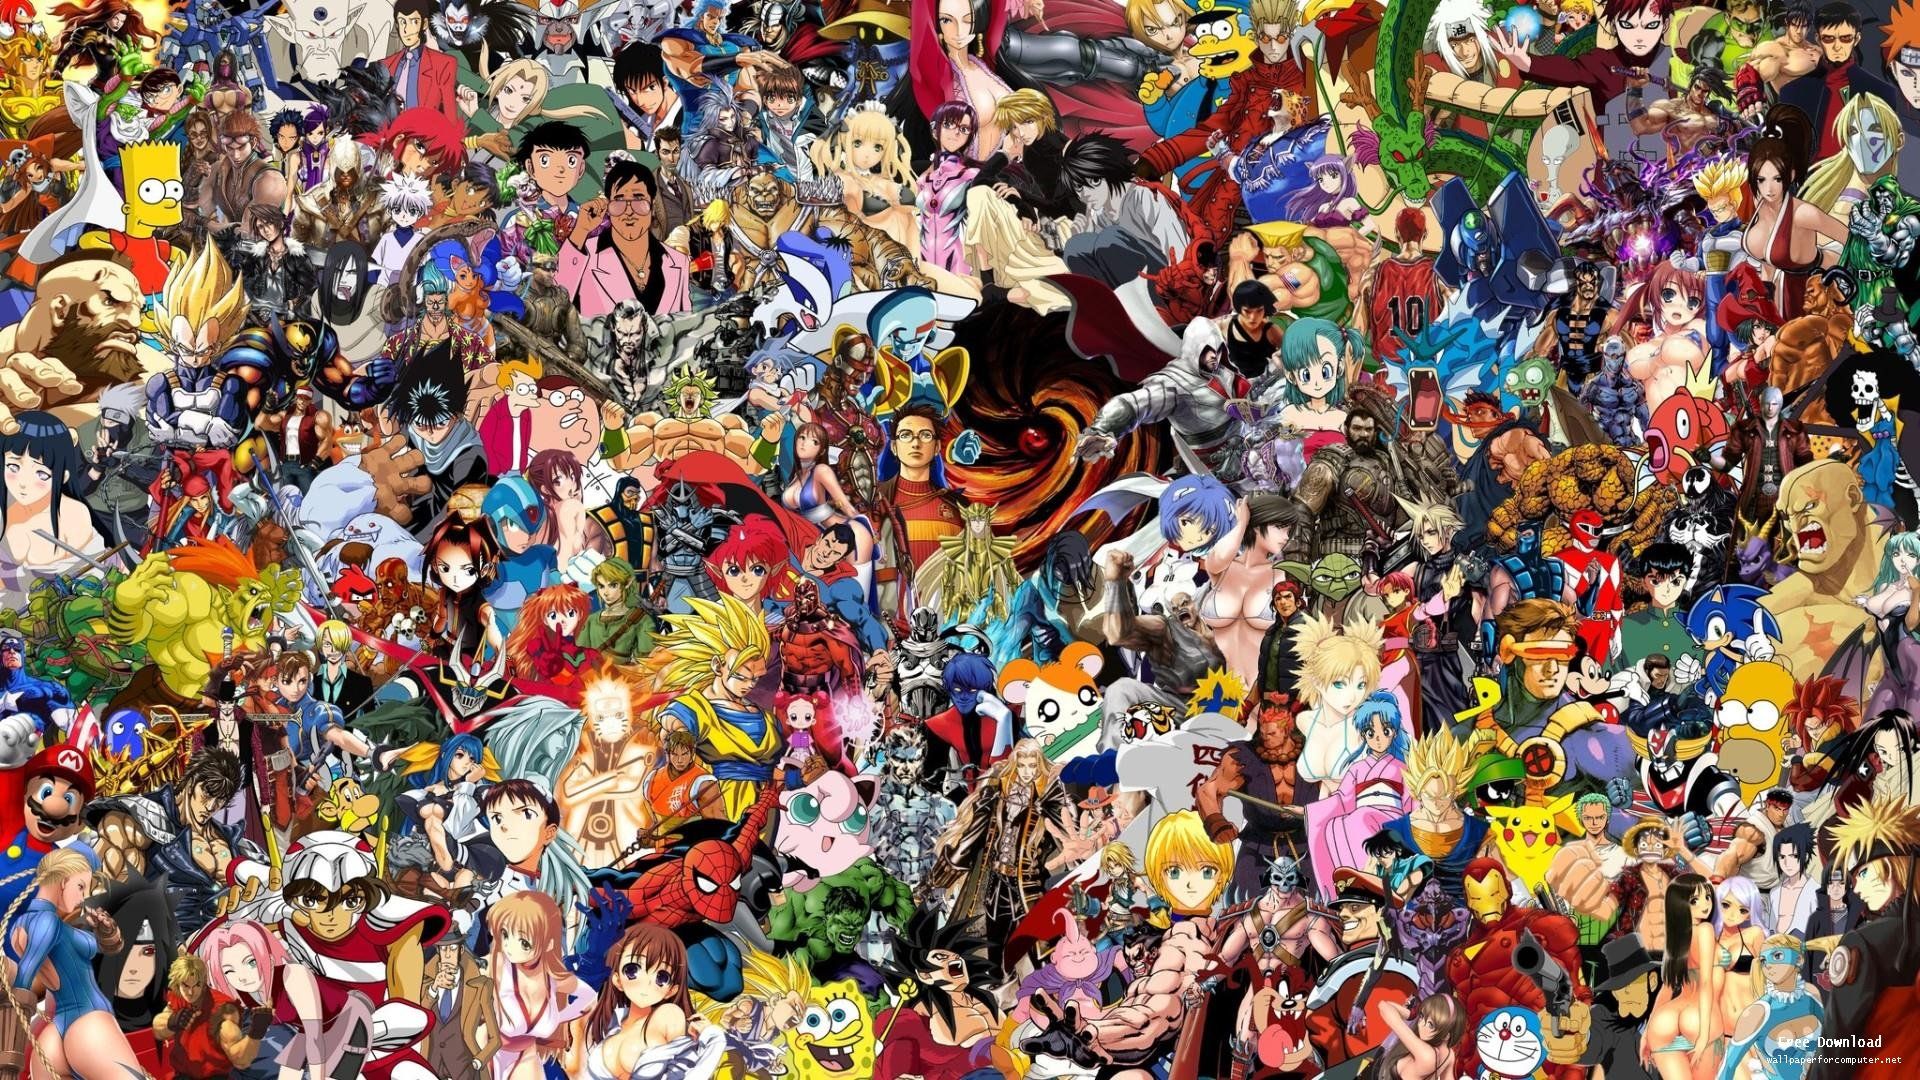 50+] Video Game Characters Wallpaper - WallpaperSafari